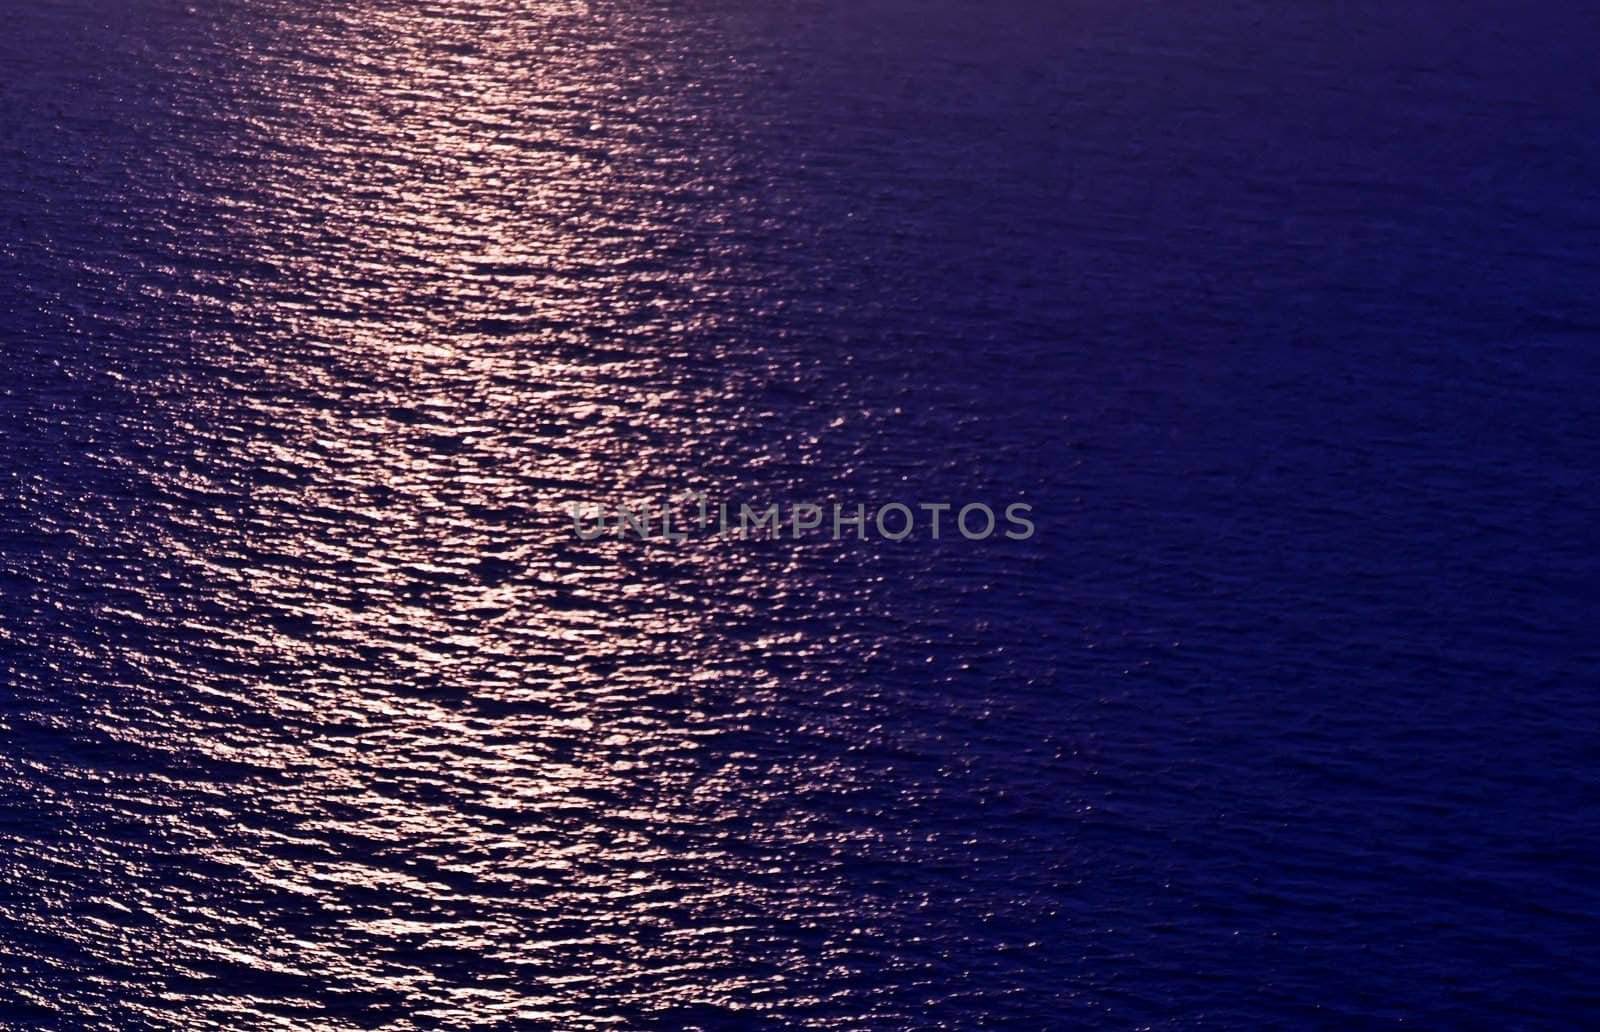 Mediterranean Sunset by PhotoWorks